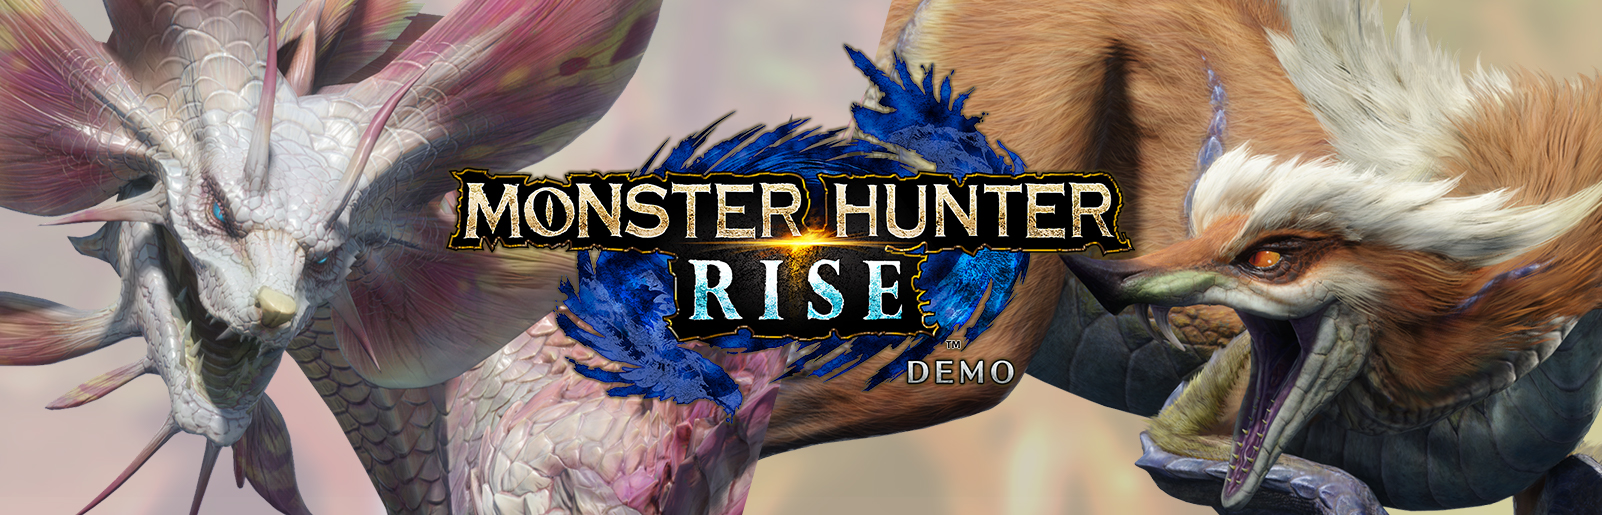 Monster Hunter Rise DEMO